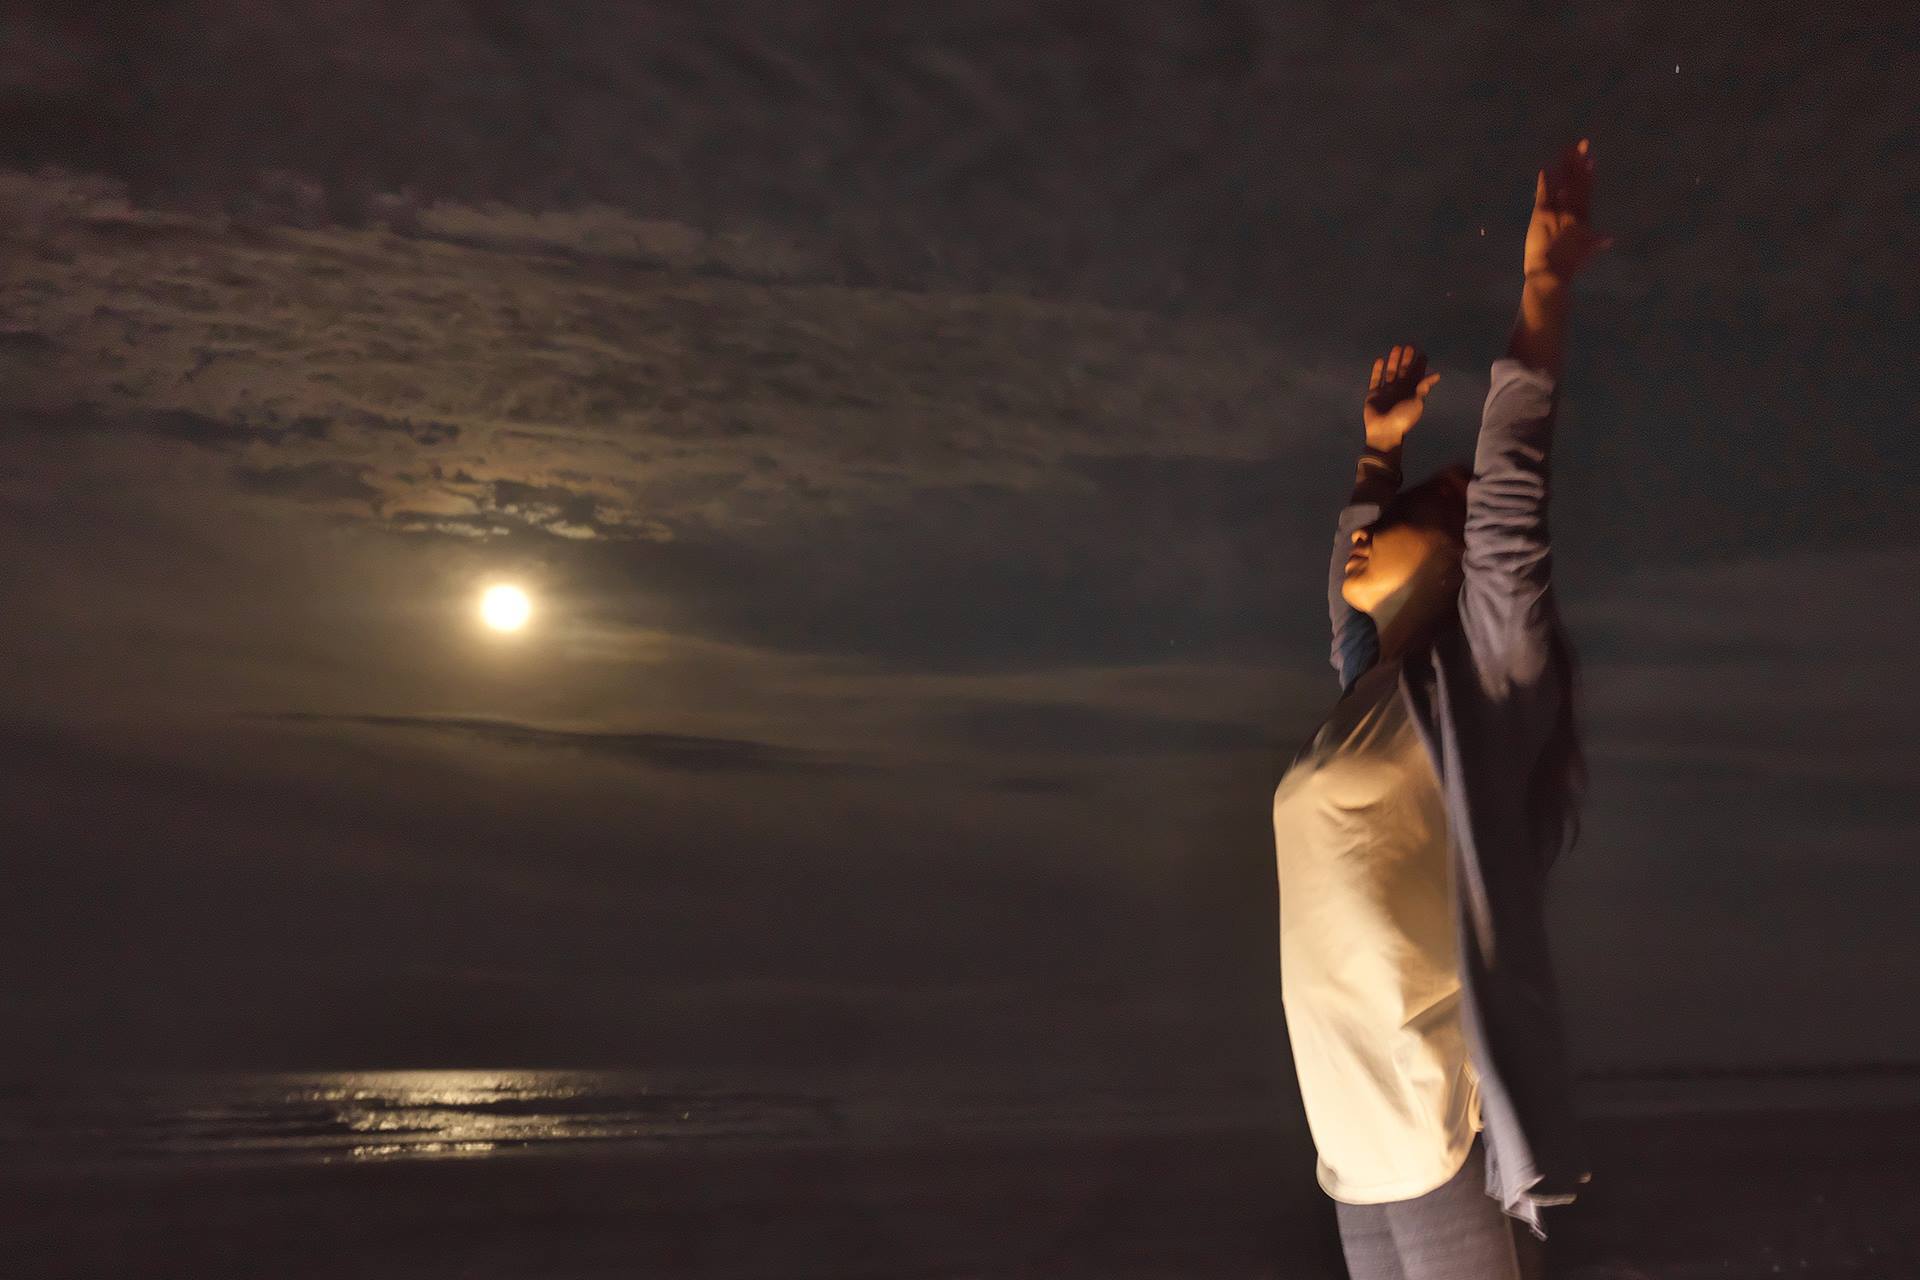 新月ビーチヨガと星空観賞で流れ星を見つけよう！
夏の夜の「ペルセウス座流星群×NEW MOON BEACH YOGA」を
8月12日に開催